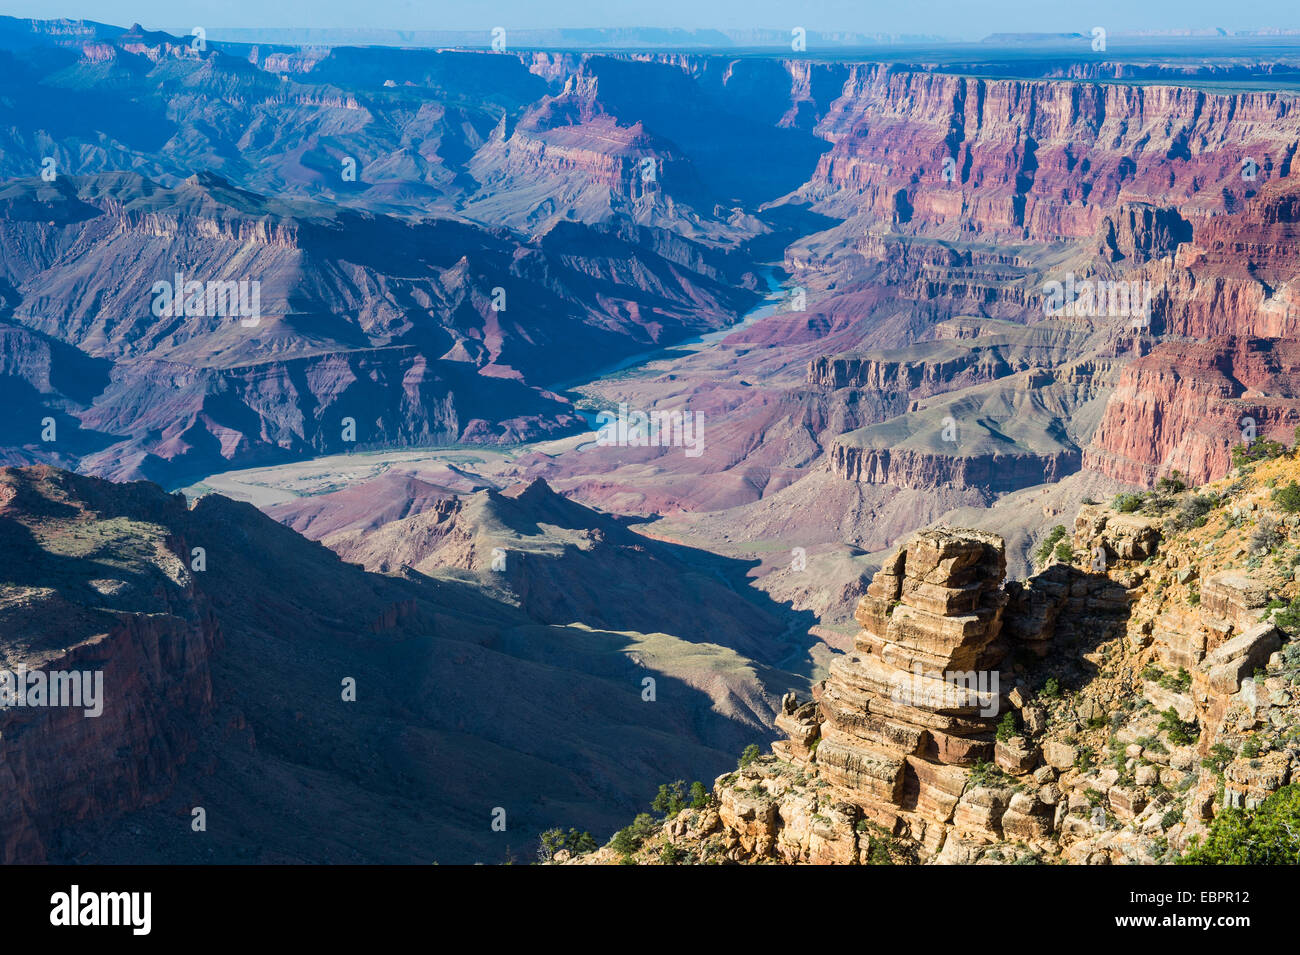 Wüste-Aussichtspunkt über den Grand Canyon, UNESCO World Heritage Site, Arizona, Vereinigte Staaten von Amerika, Nordamerika Stockfoto